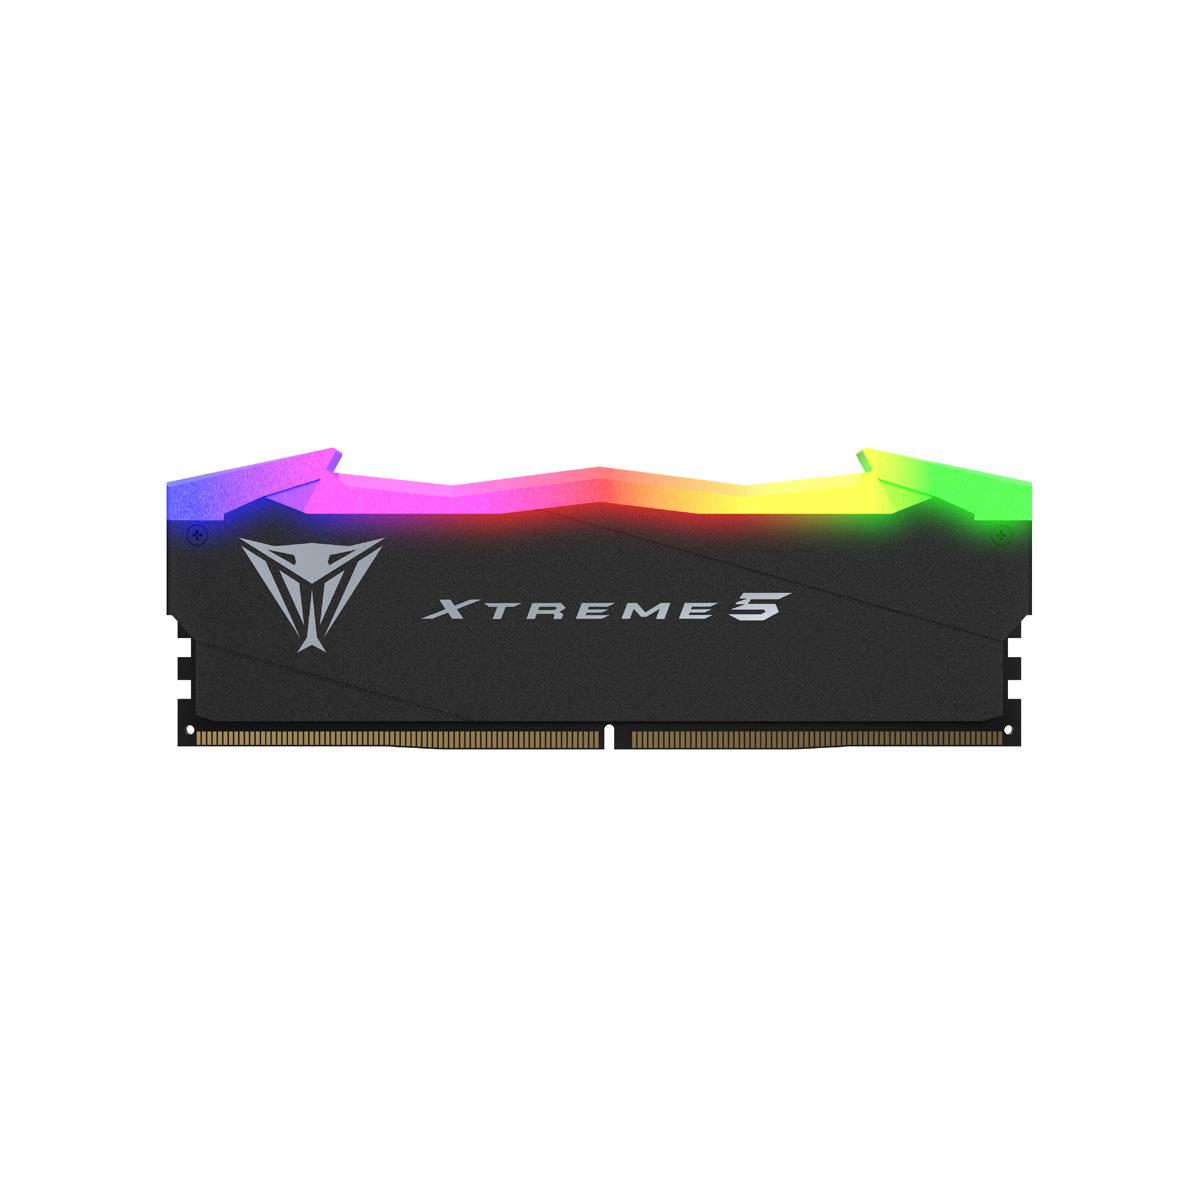 XTREME 5 RGB 48G(24G*2) DDR5 8000MHZ 1.45V